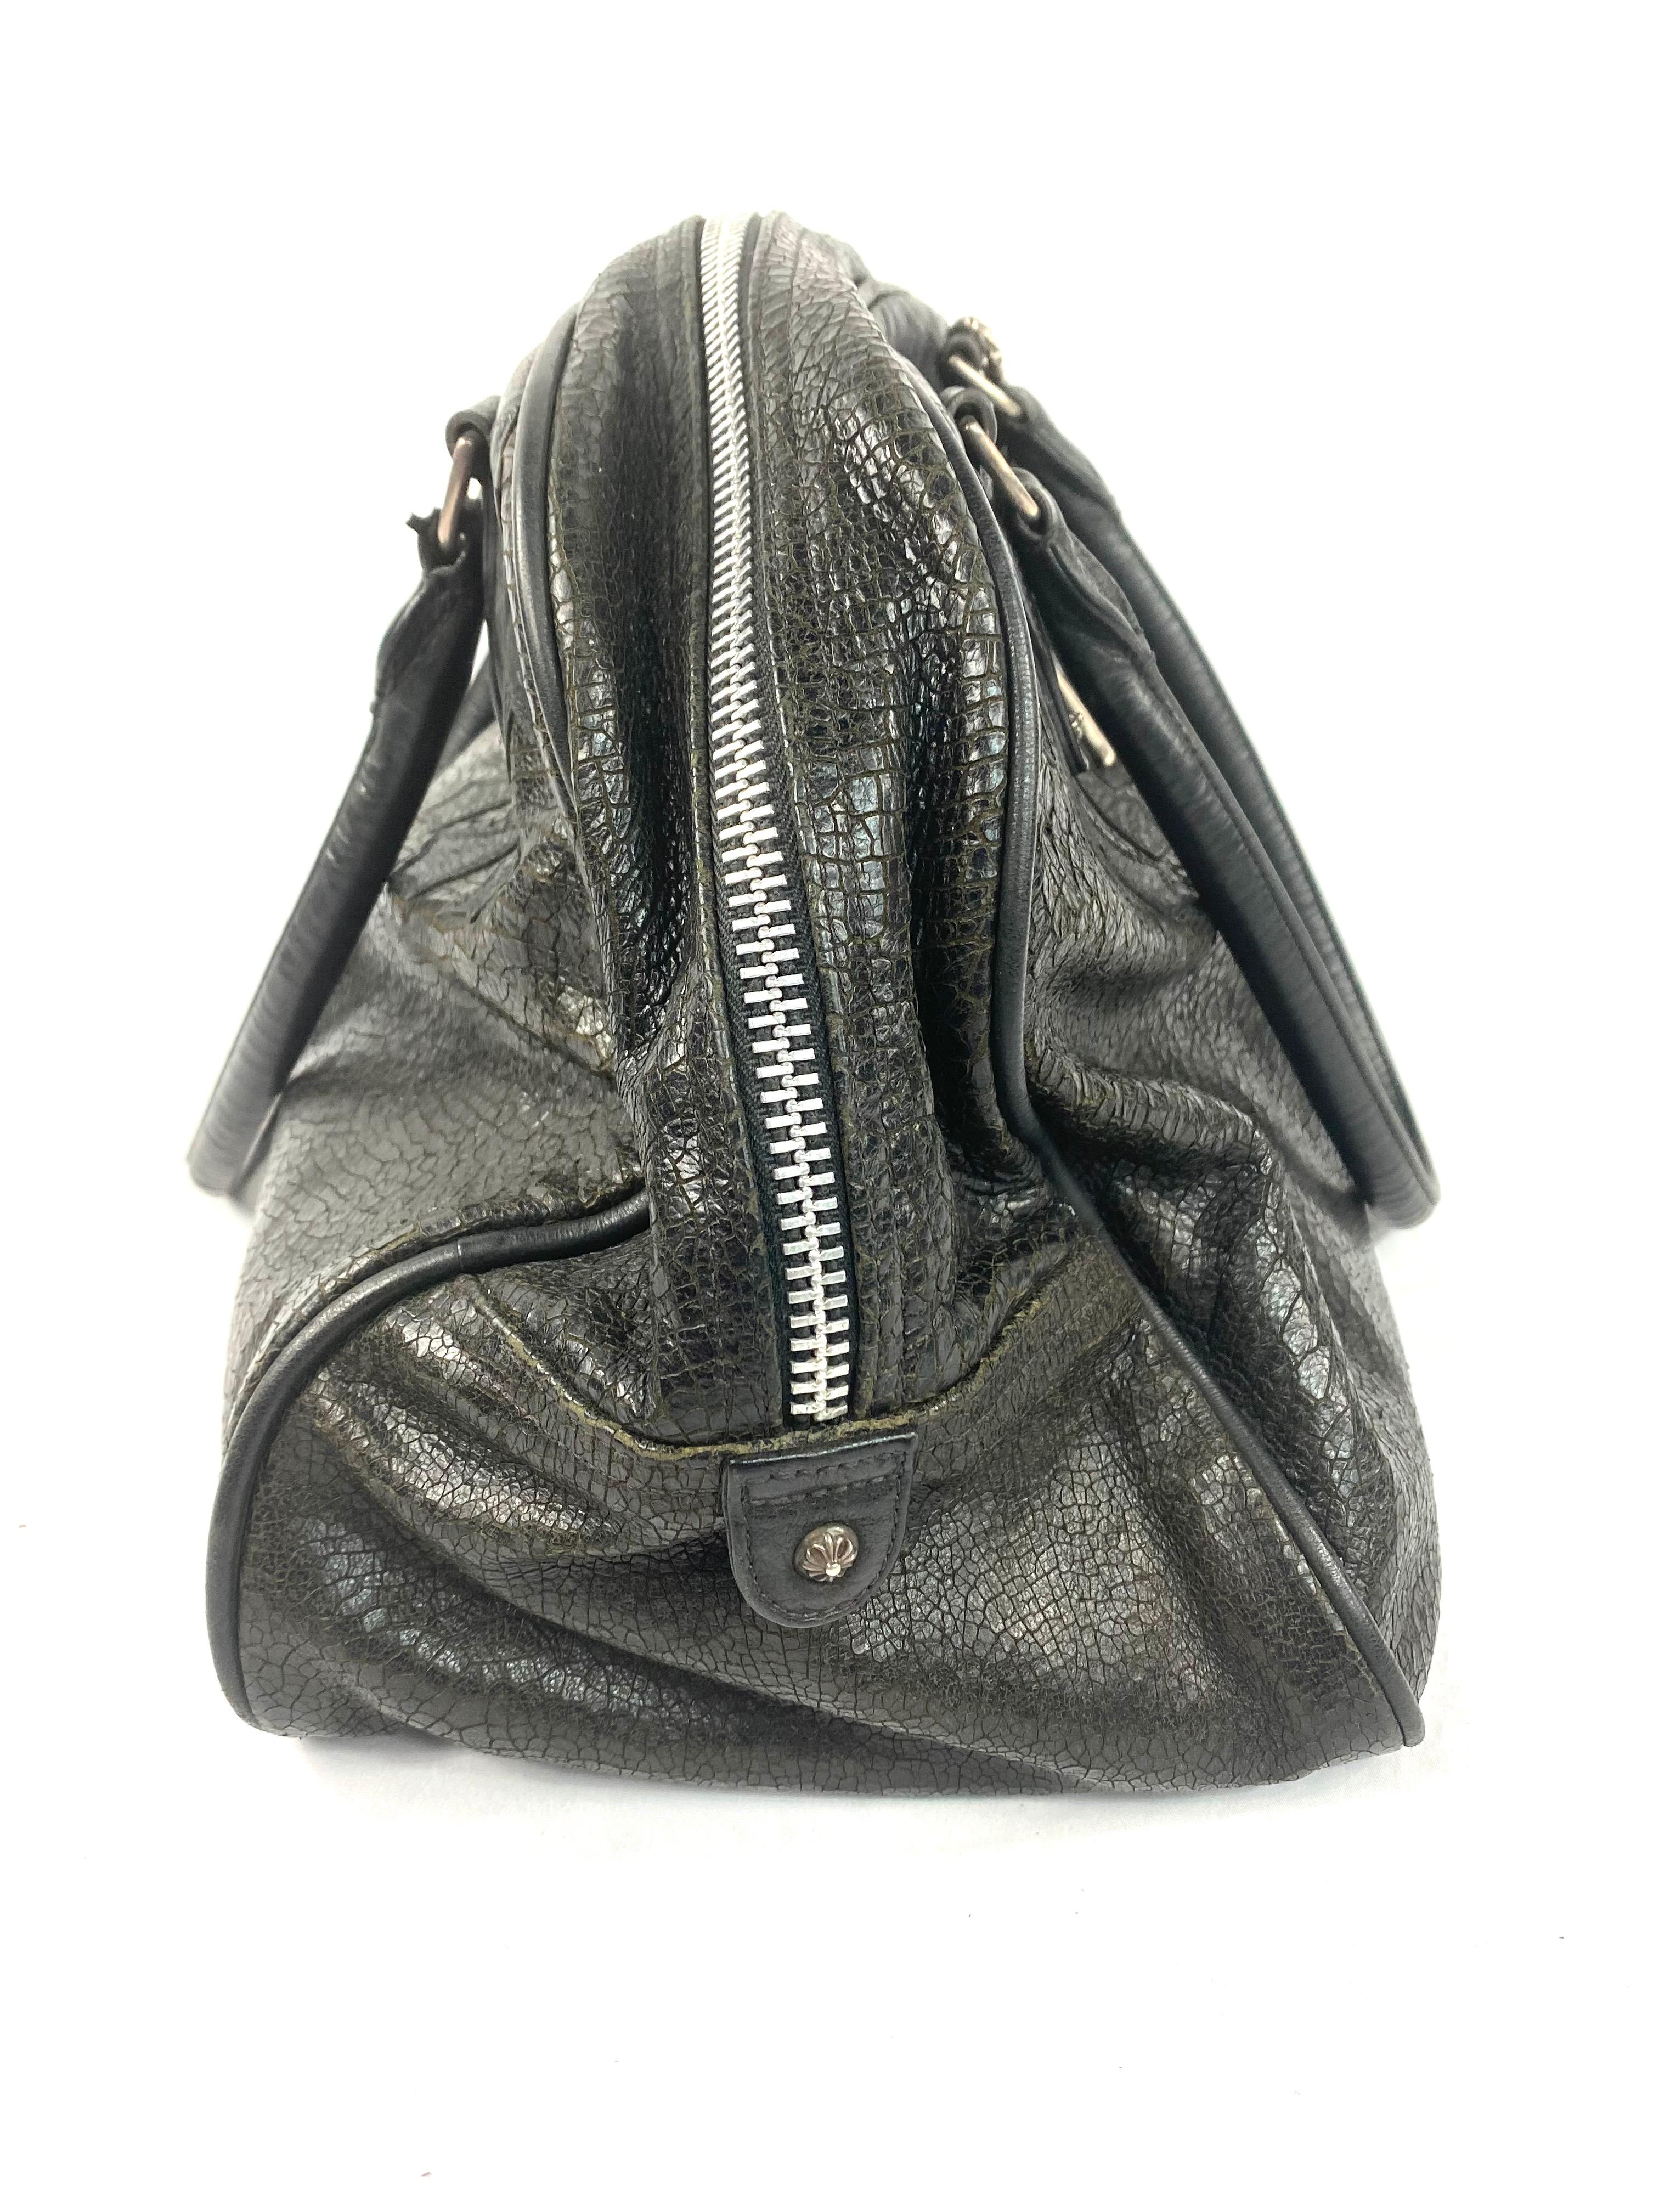 Vintage Chrome Hearts Black Leather Tote Shoulder Handbag 1